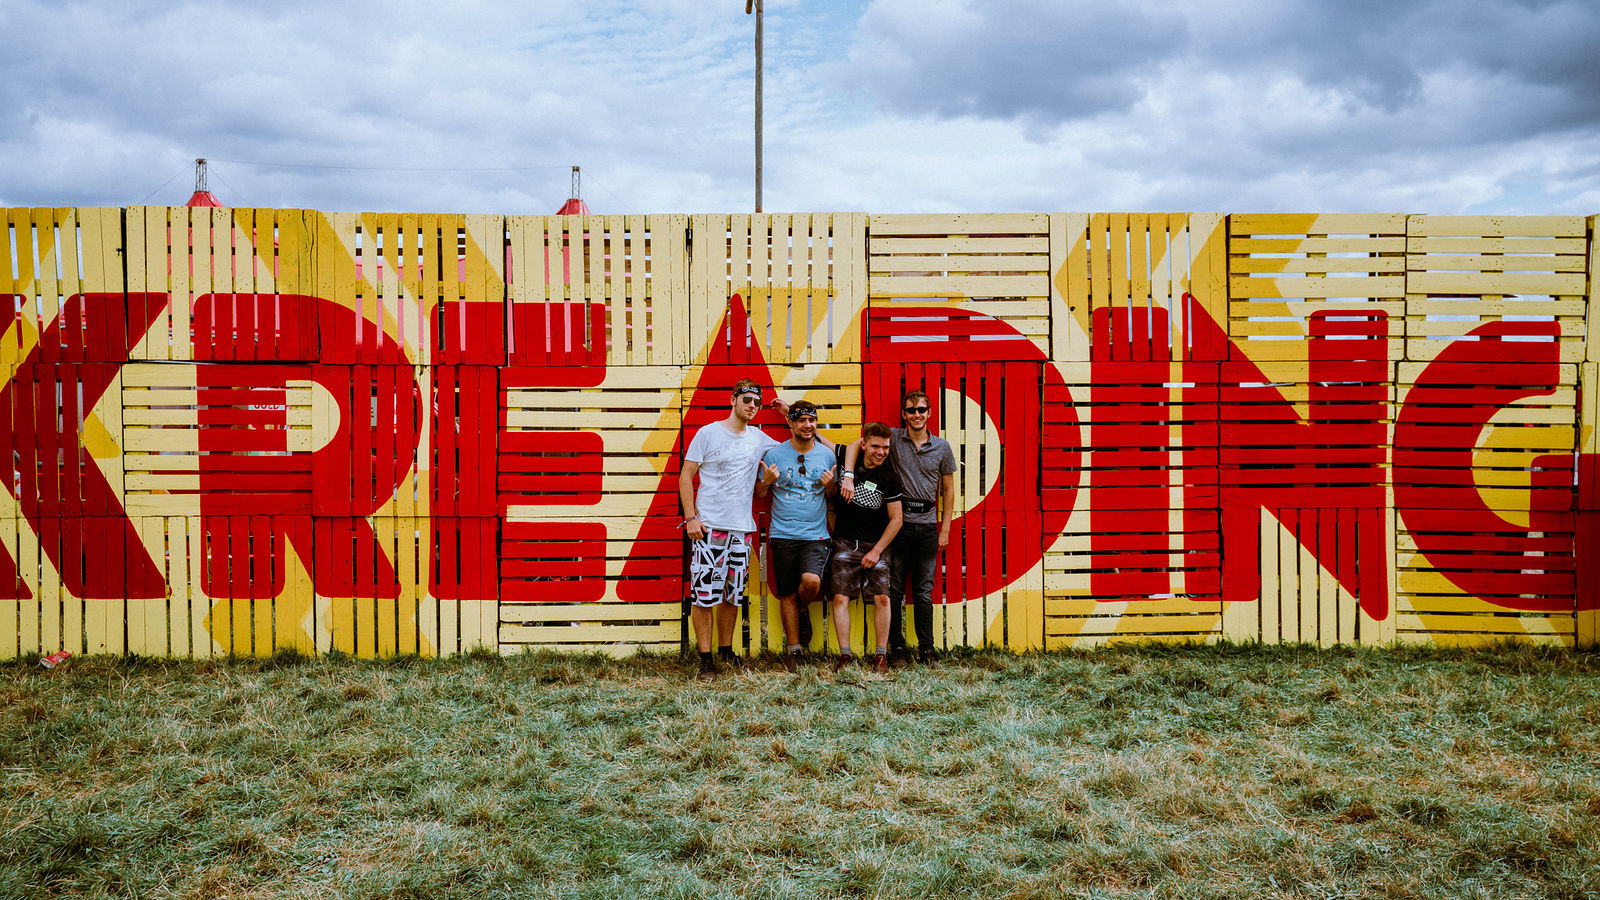 Reading Festival 2018